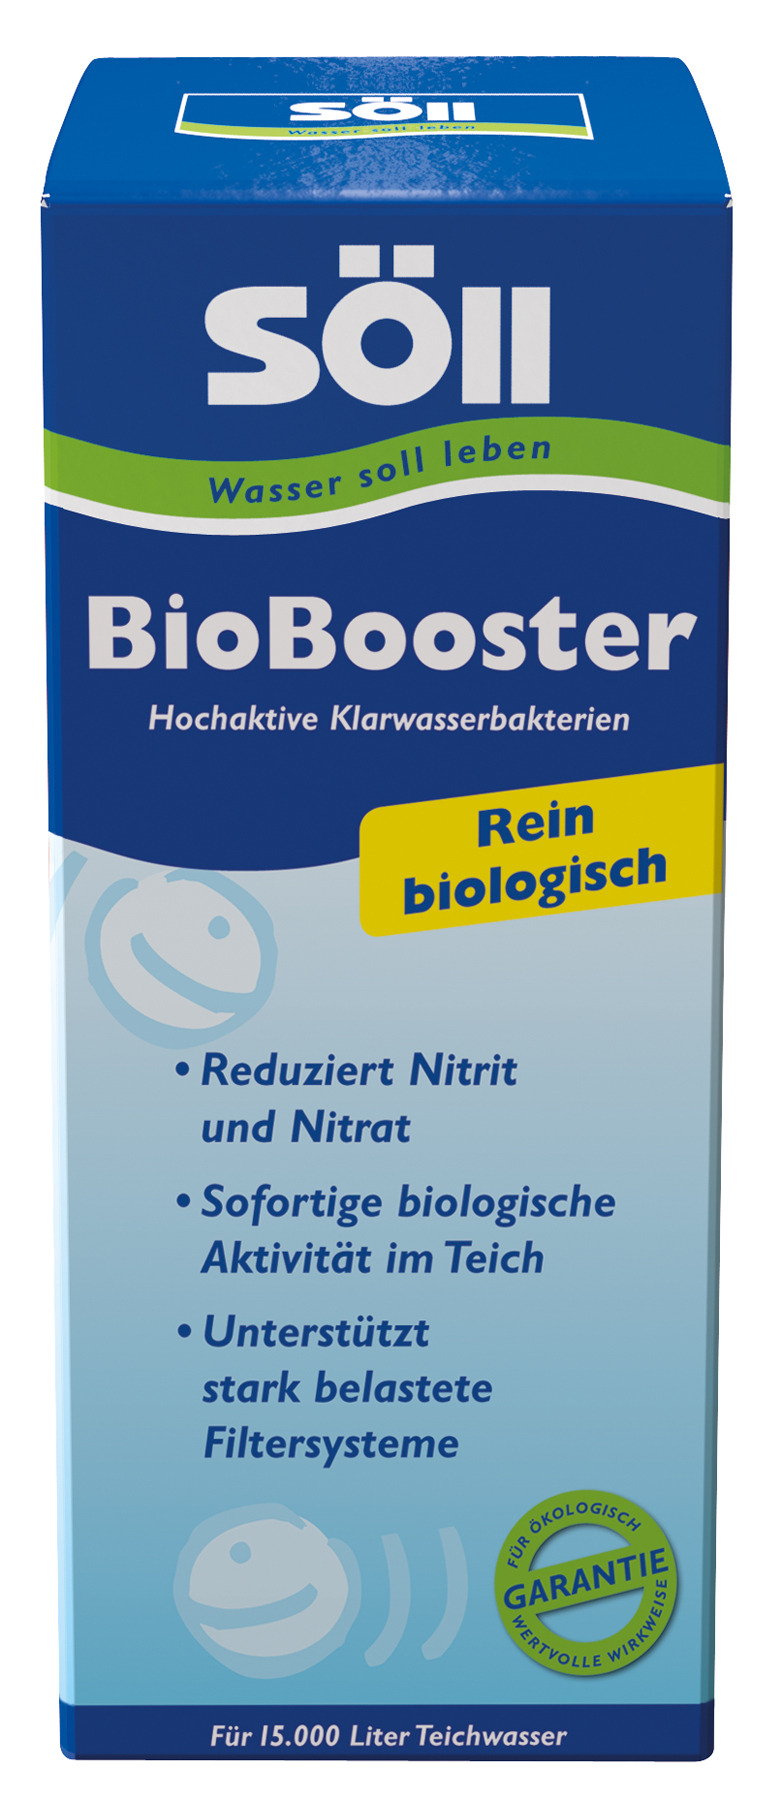 BioBooster